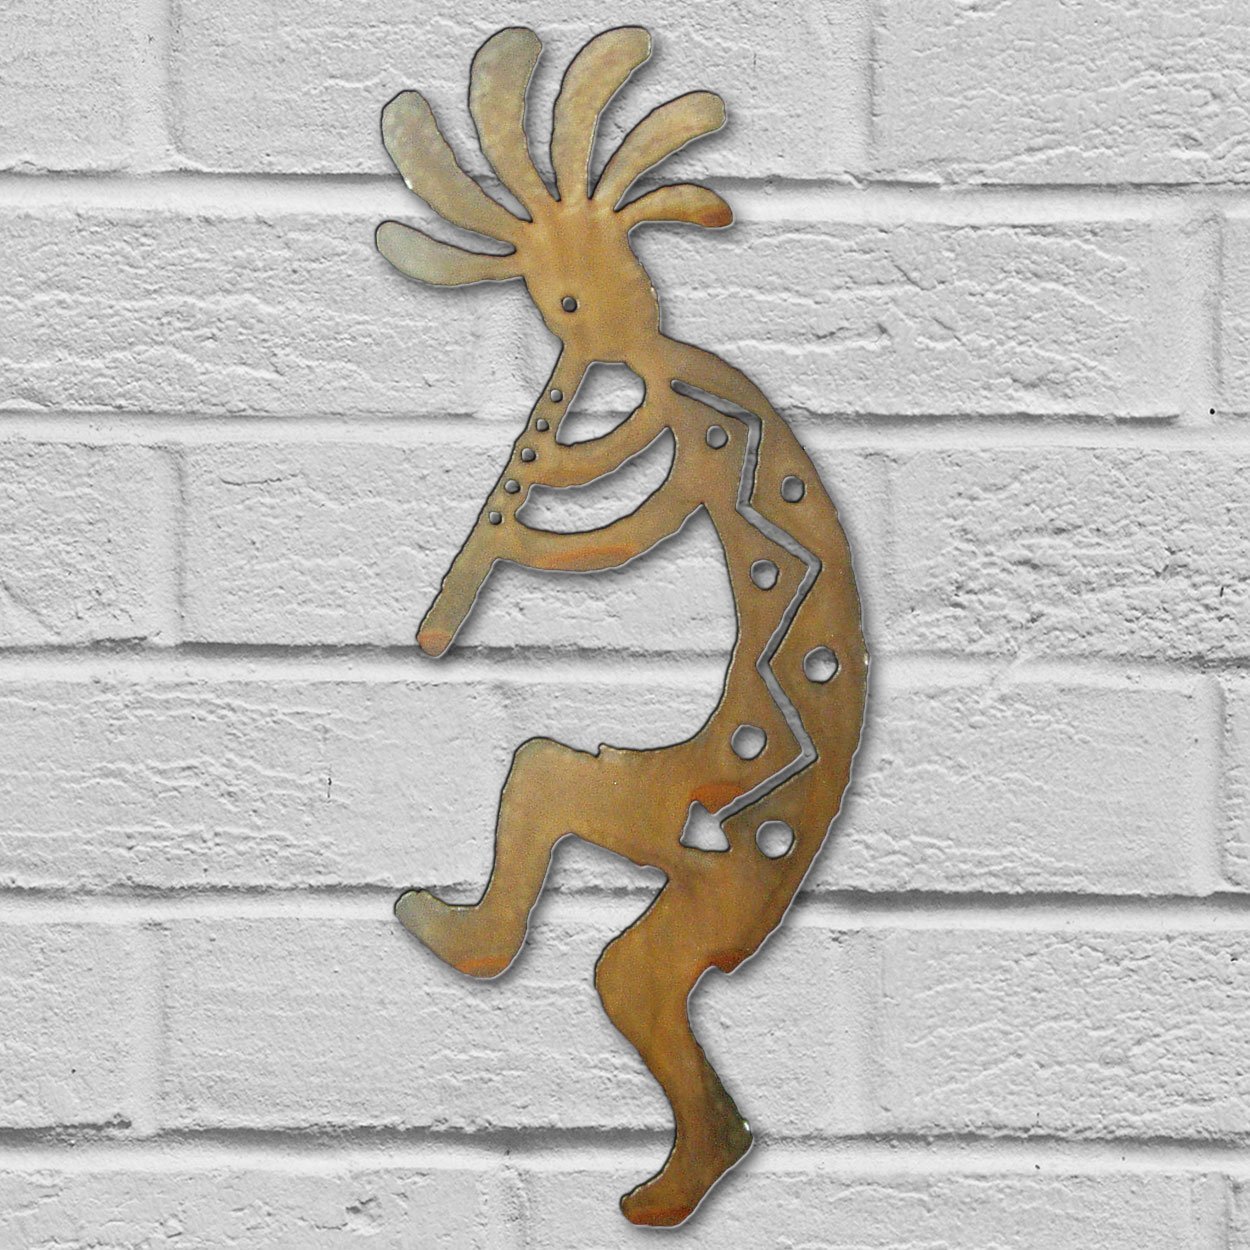 165271 - 12in Kokopelli Dancing Left 3D Southwest Metal Wall Art in Rust Finish